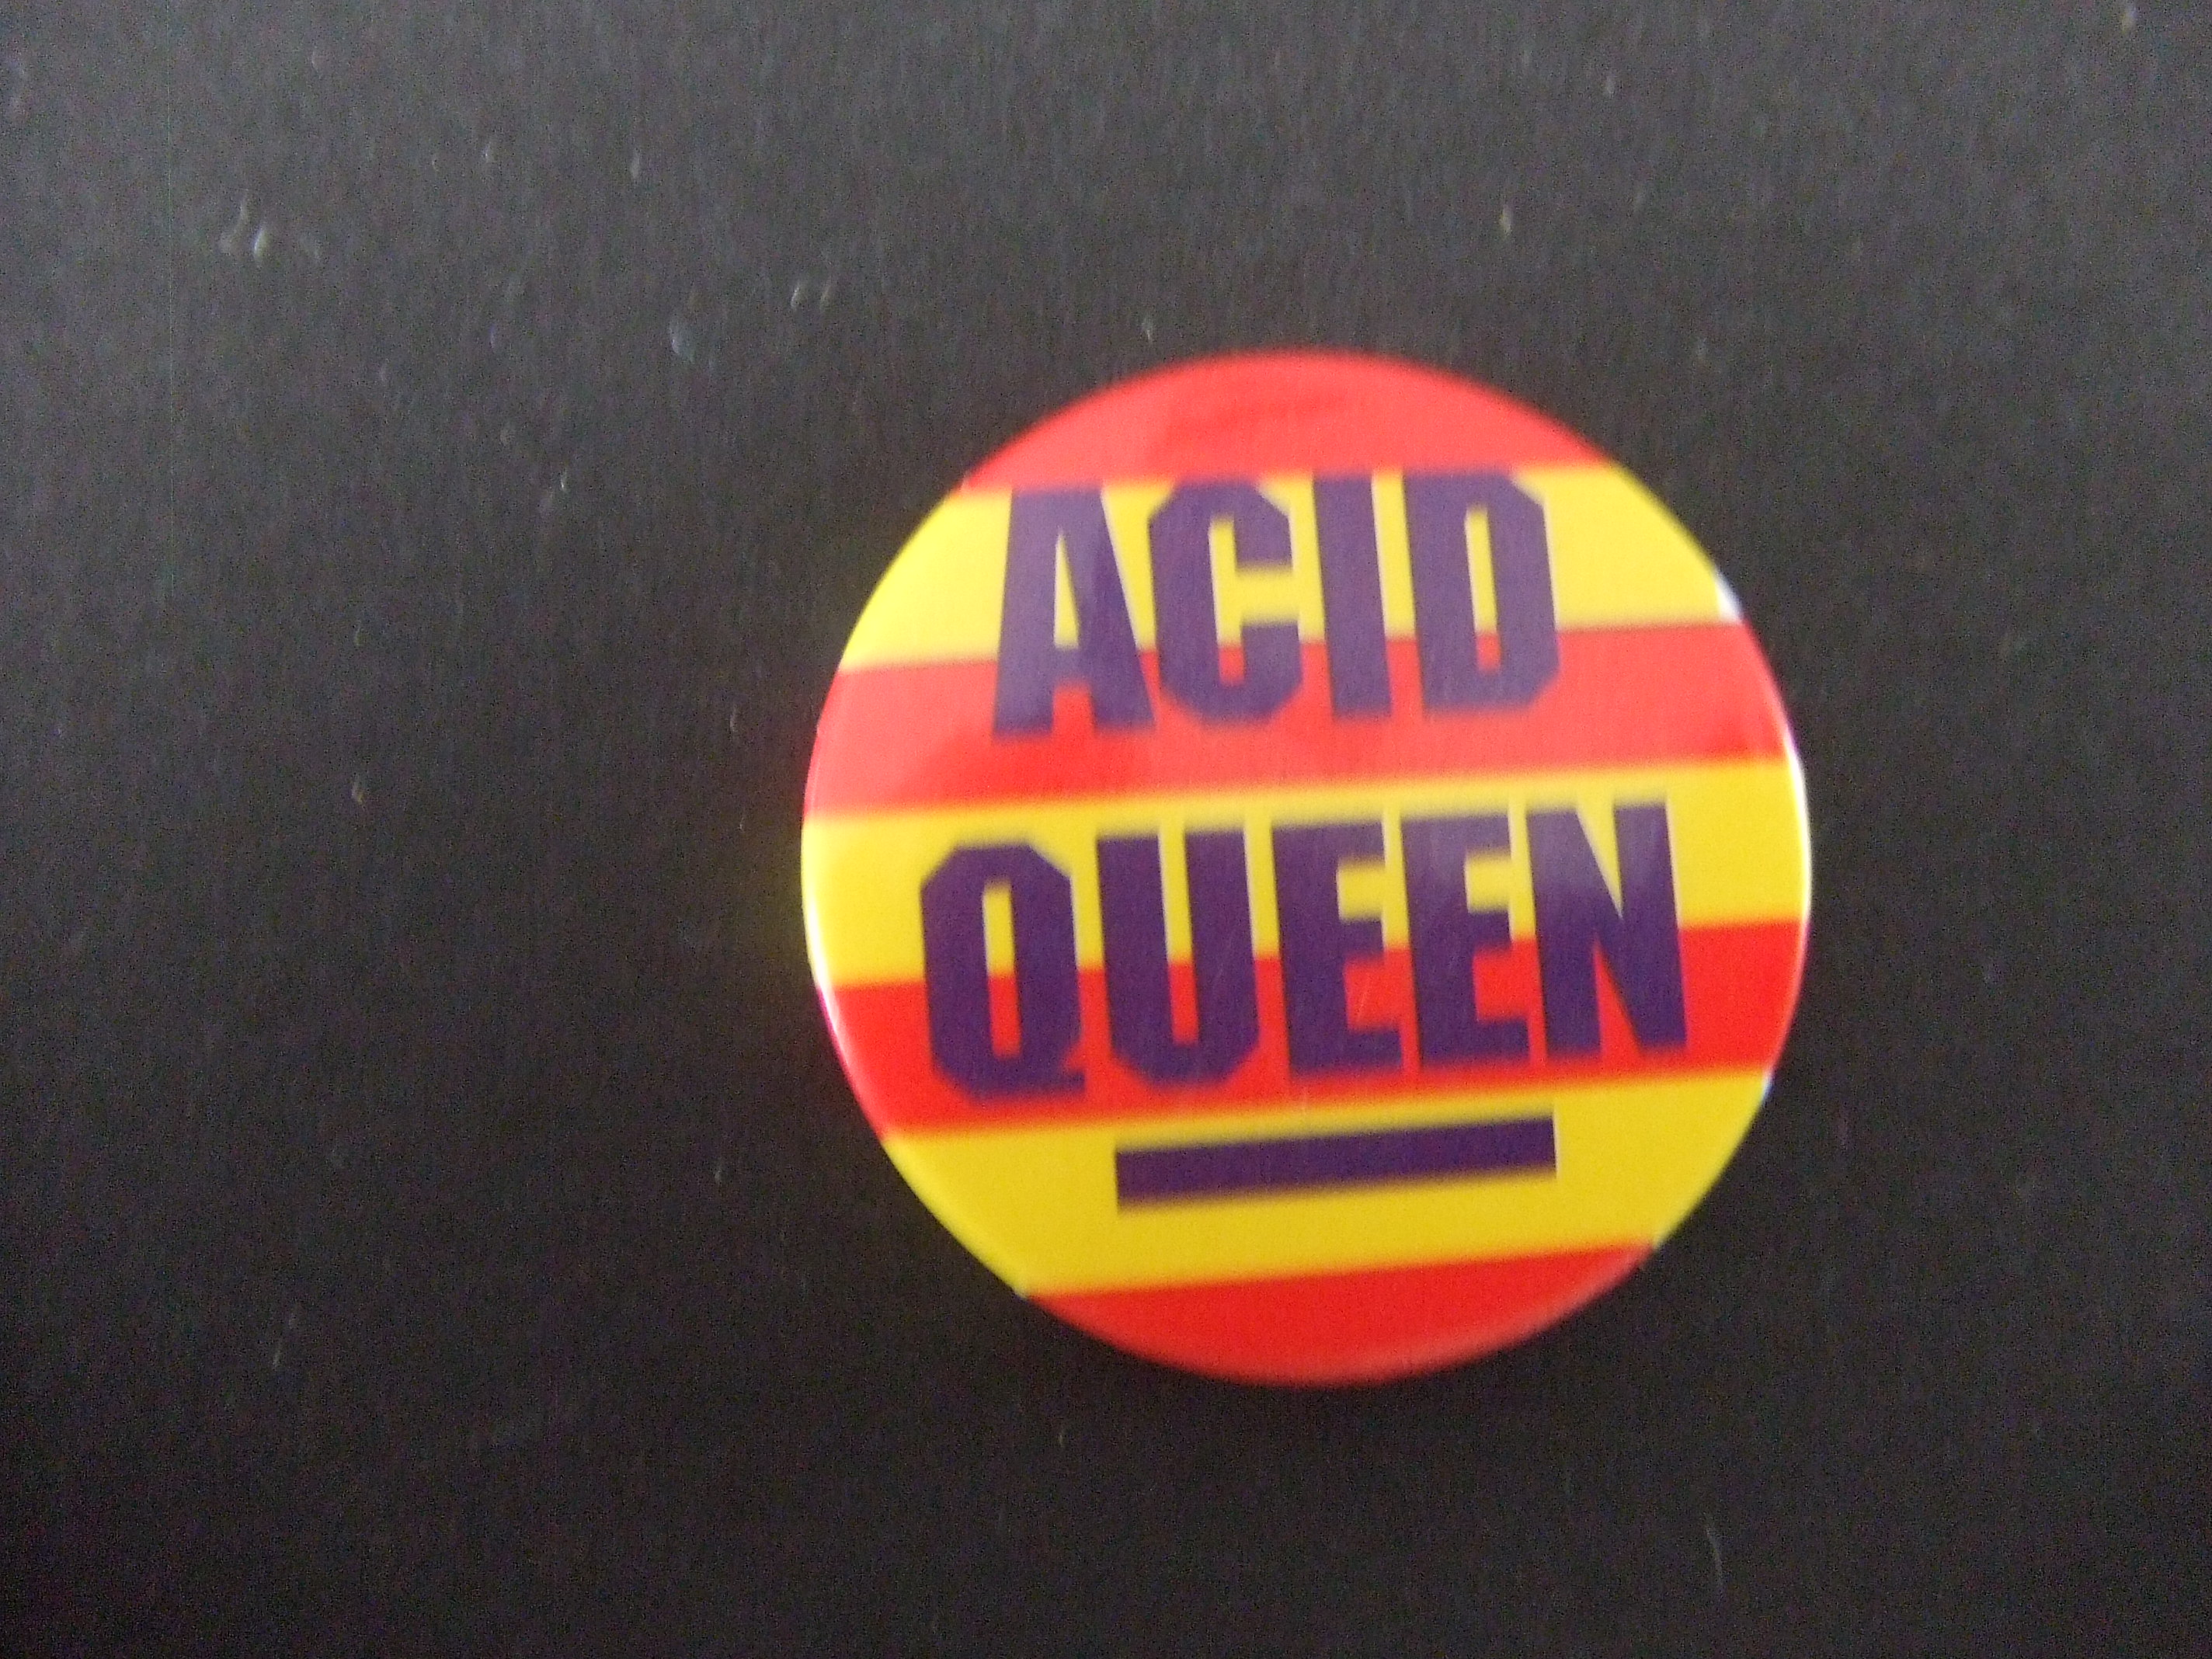 Tina Turner Acid Queen is haar tweede solo album